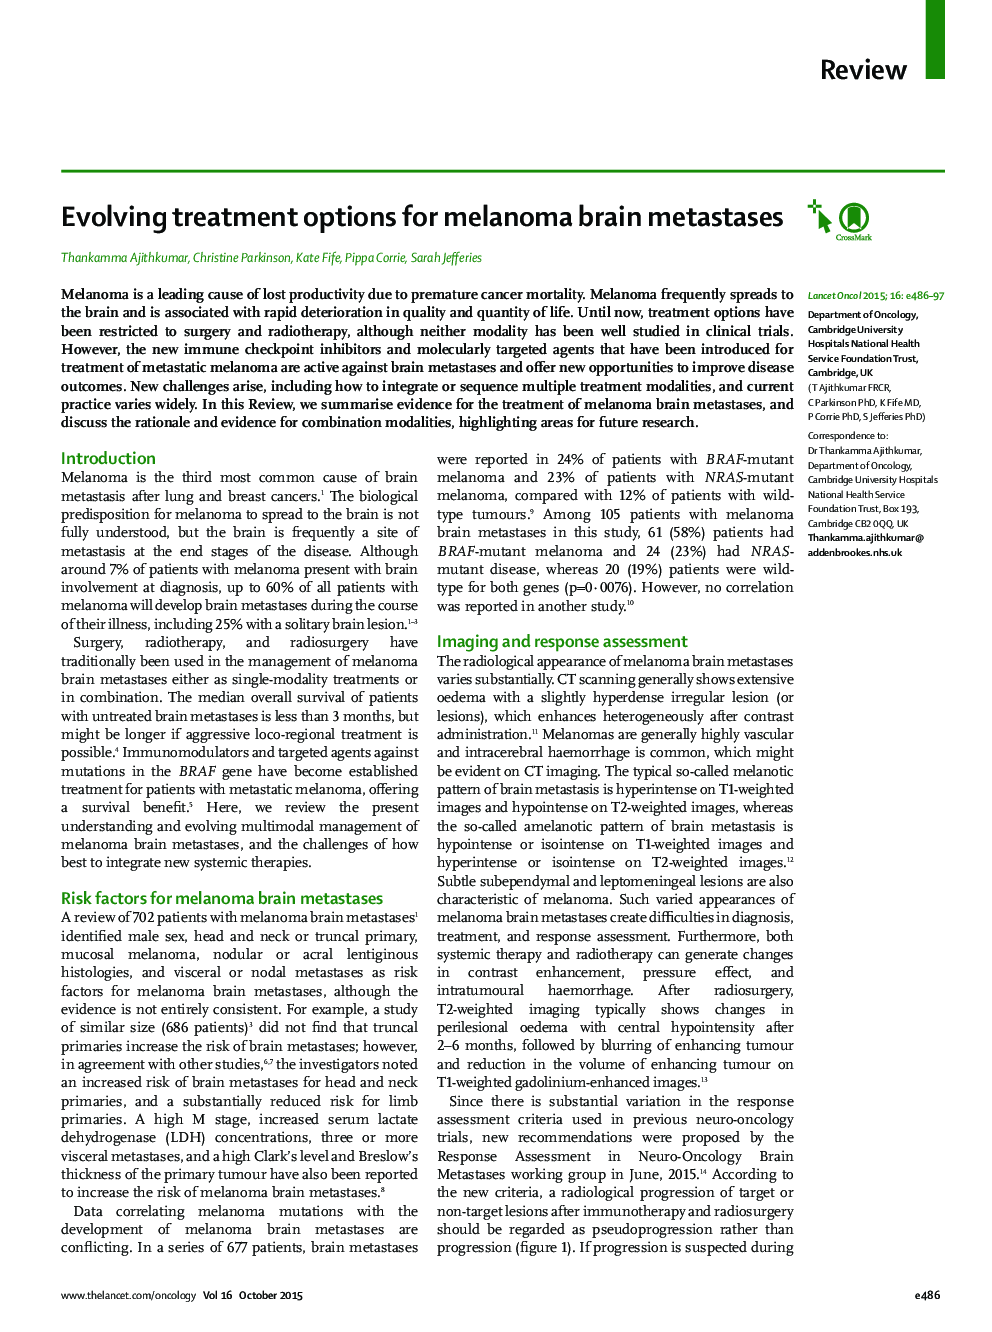 Evolving treatment options for melanoma brain metastases